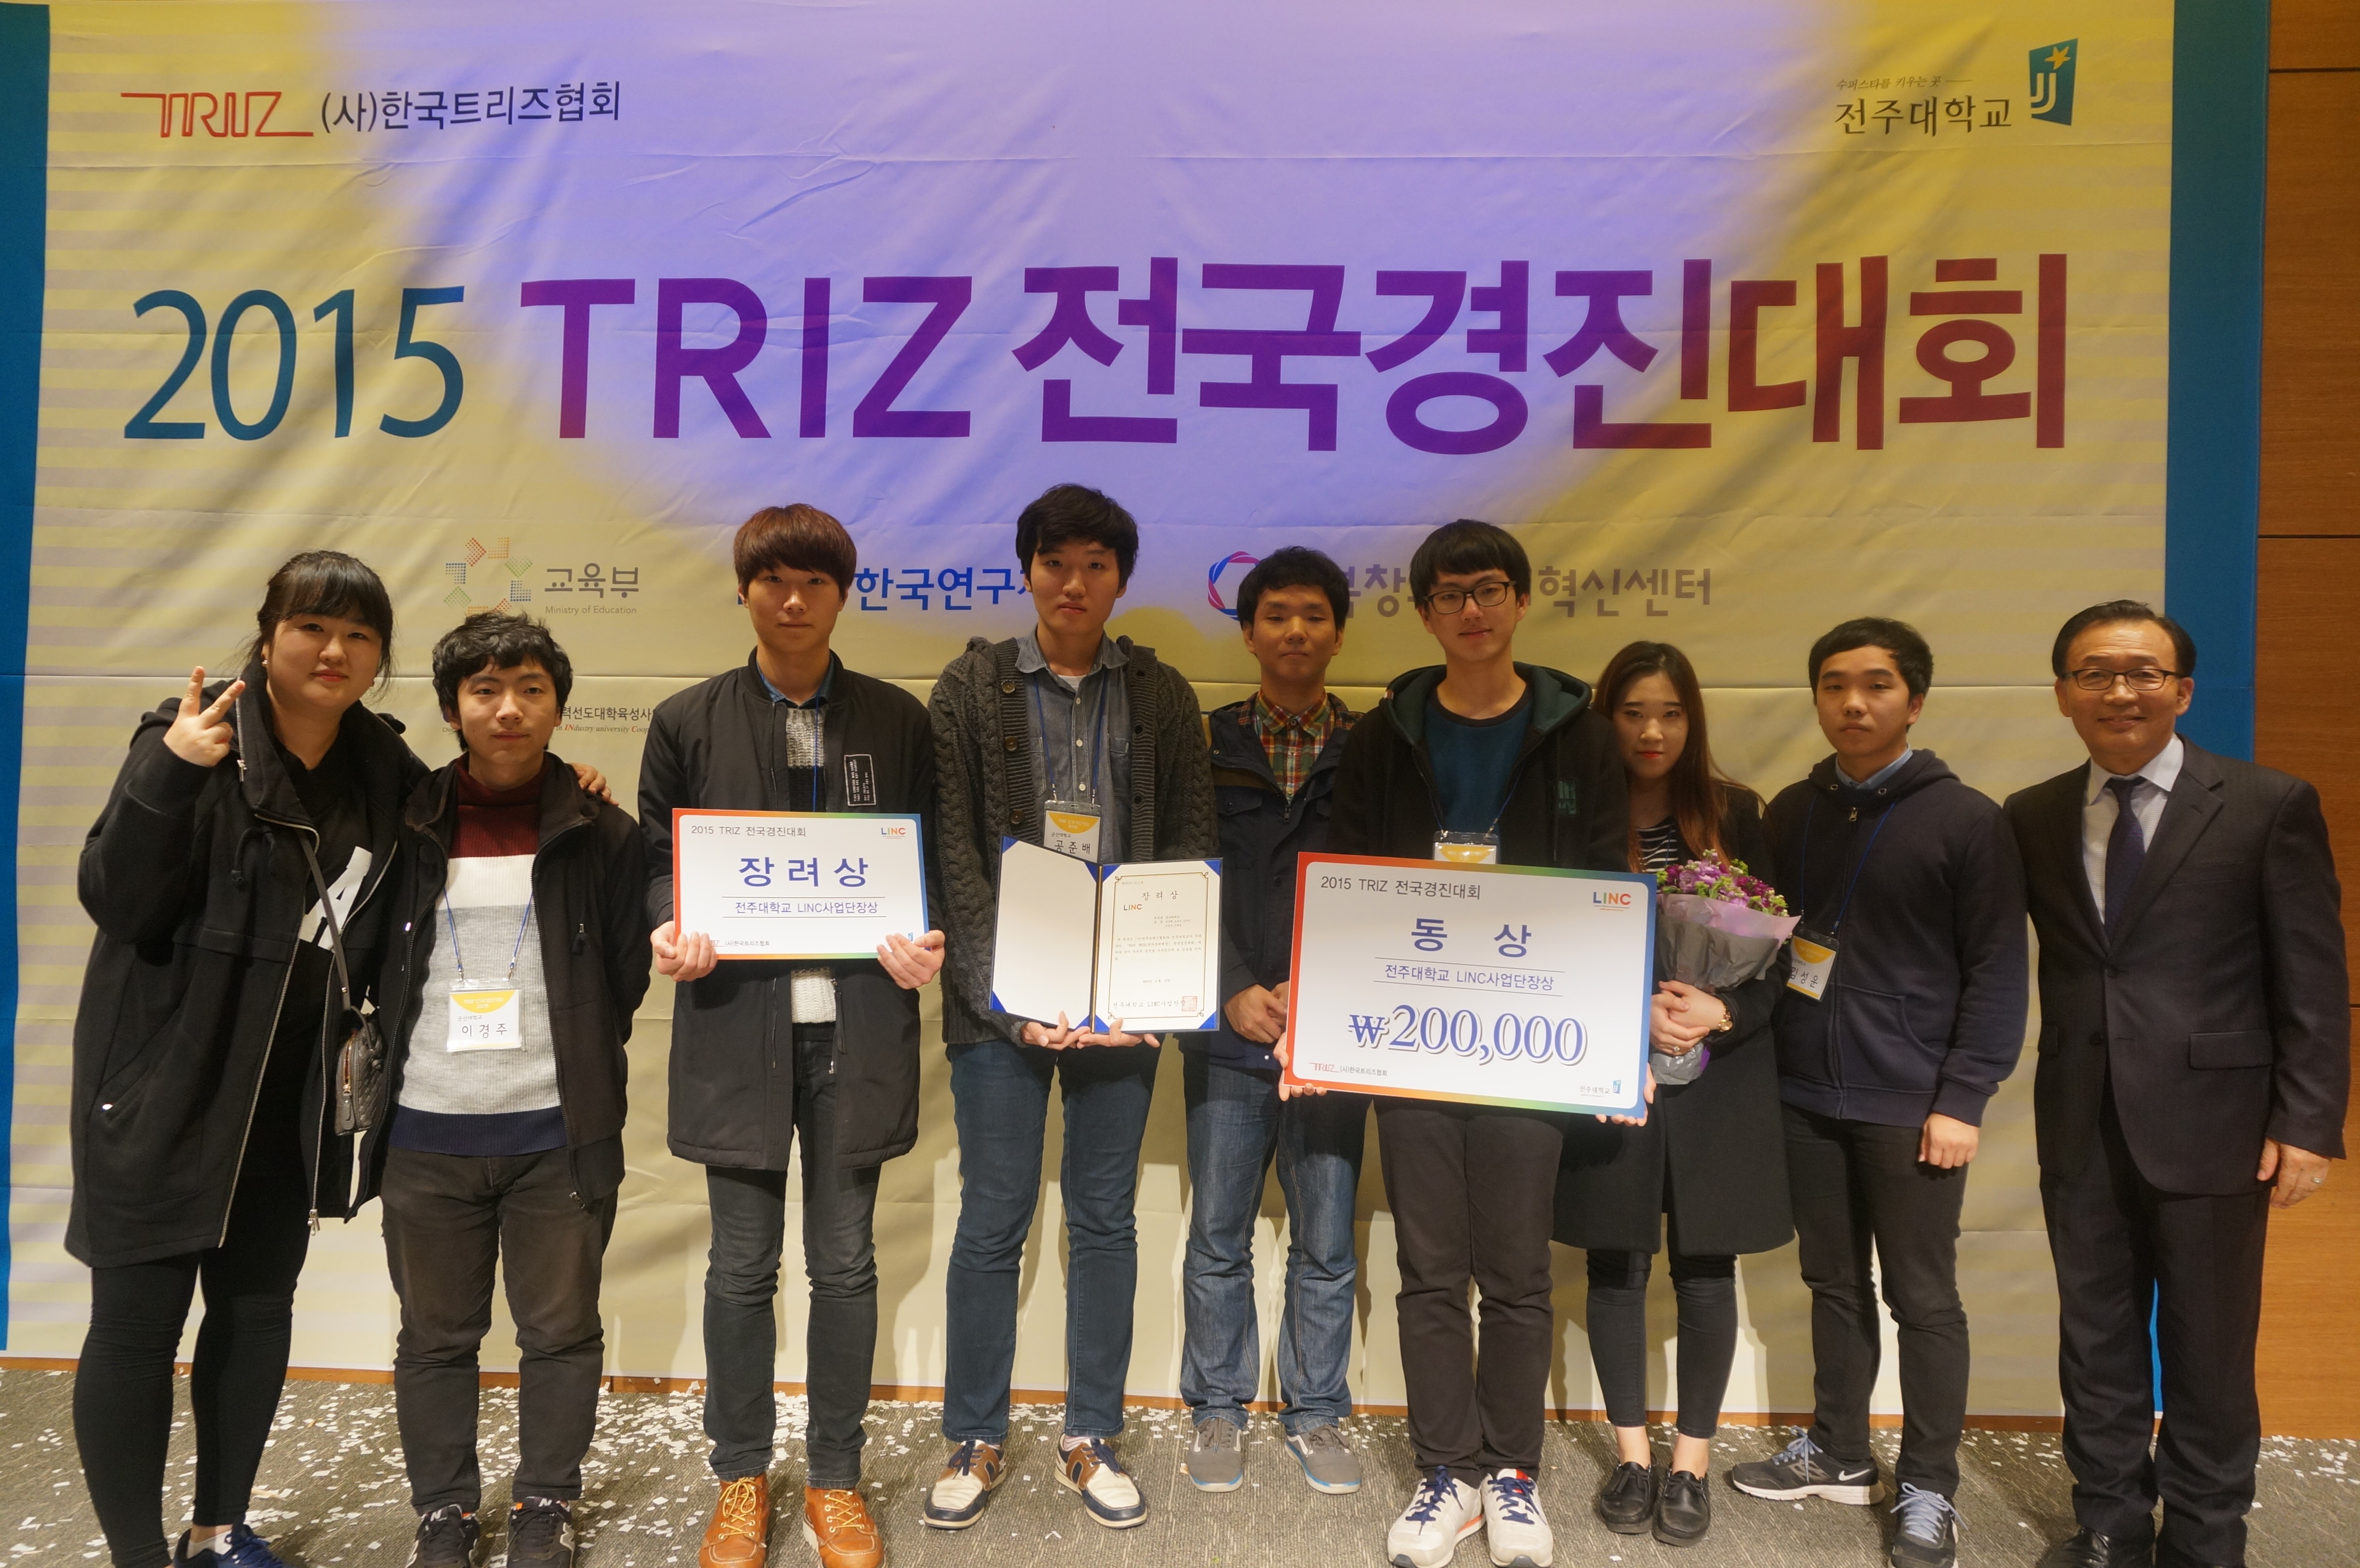 남승태·공준배 학생 등, “2015 TRIZ 전국경진대회”에서 입상 이미지(1)